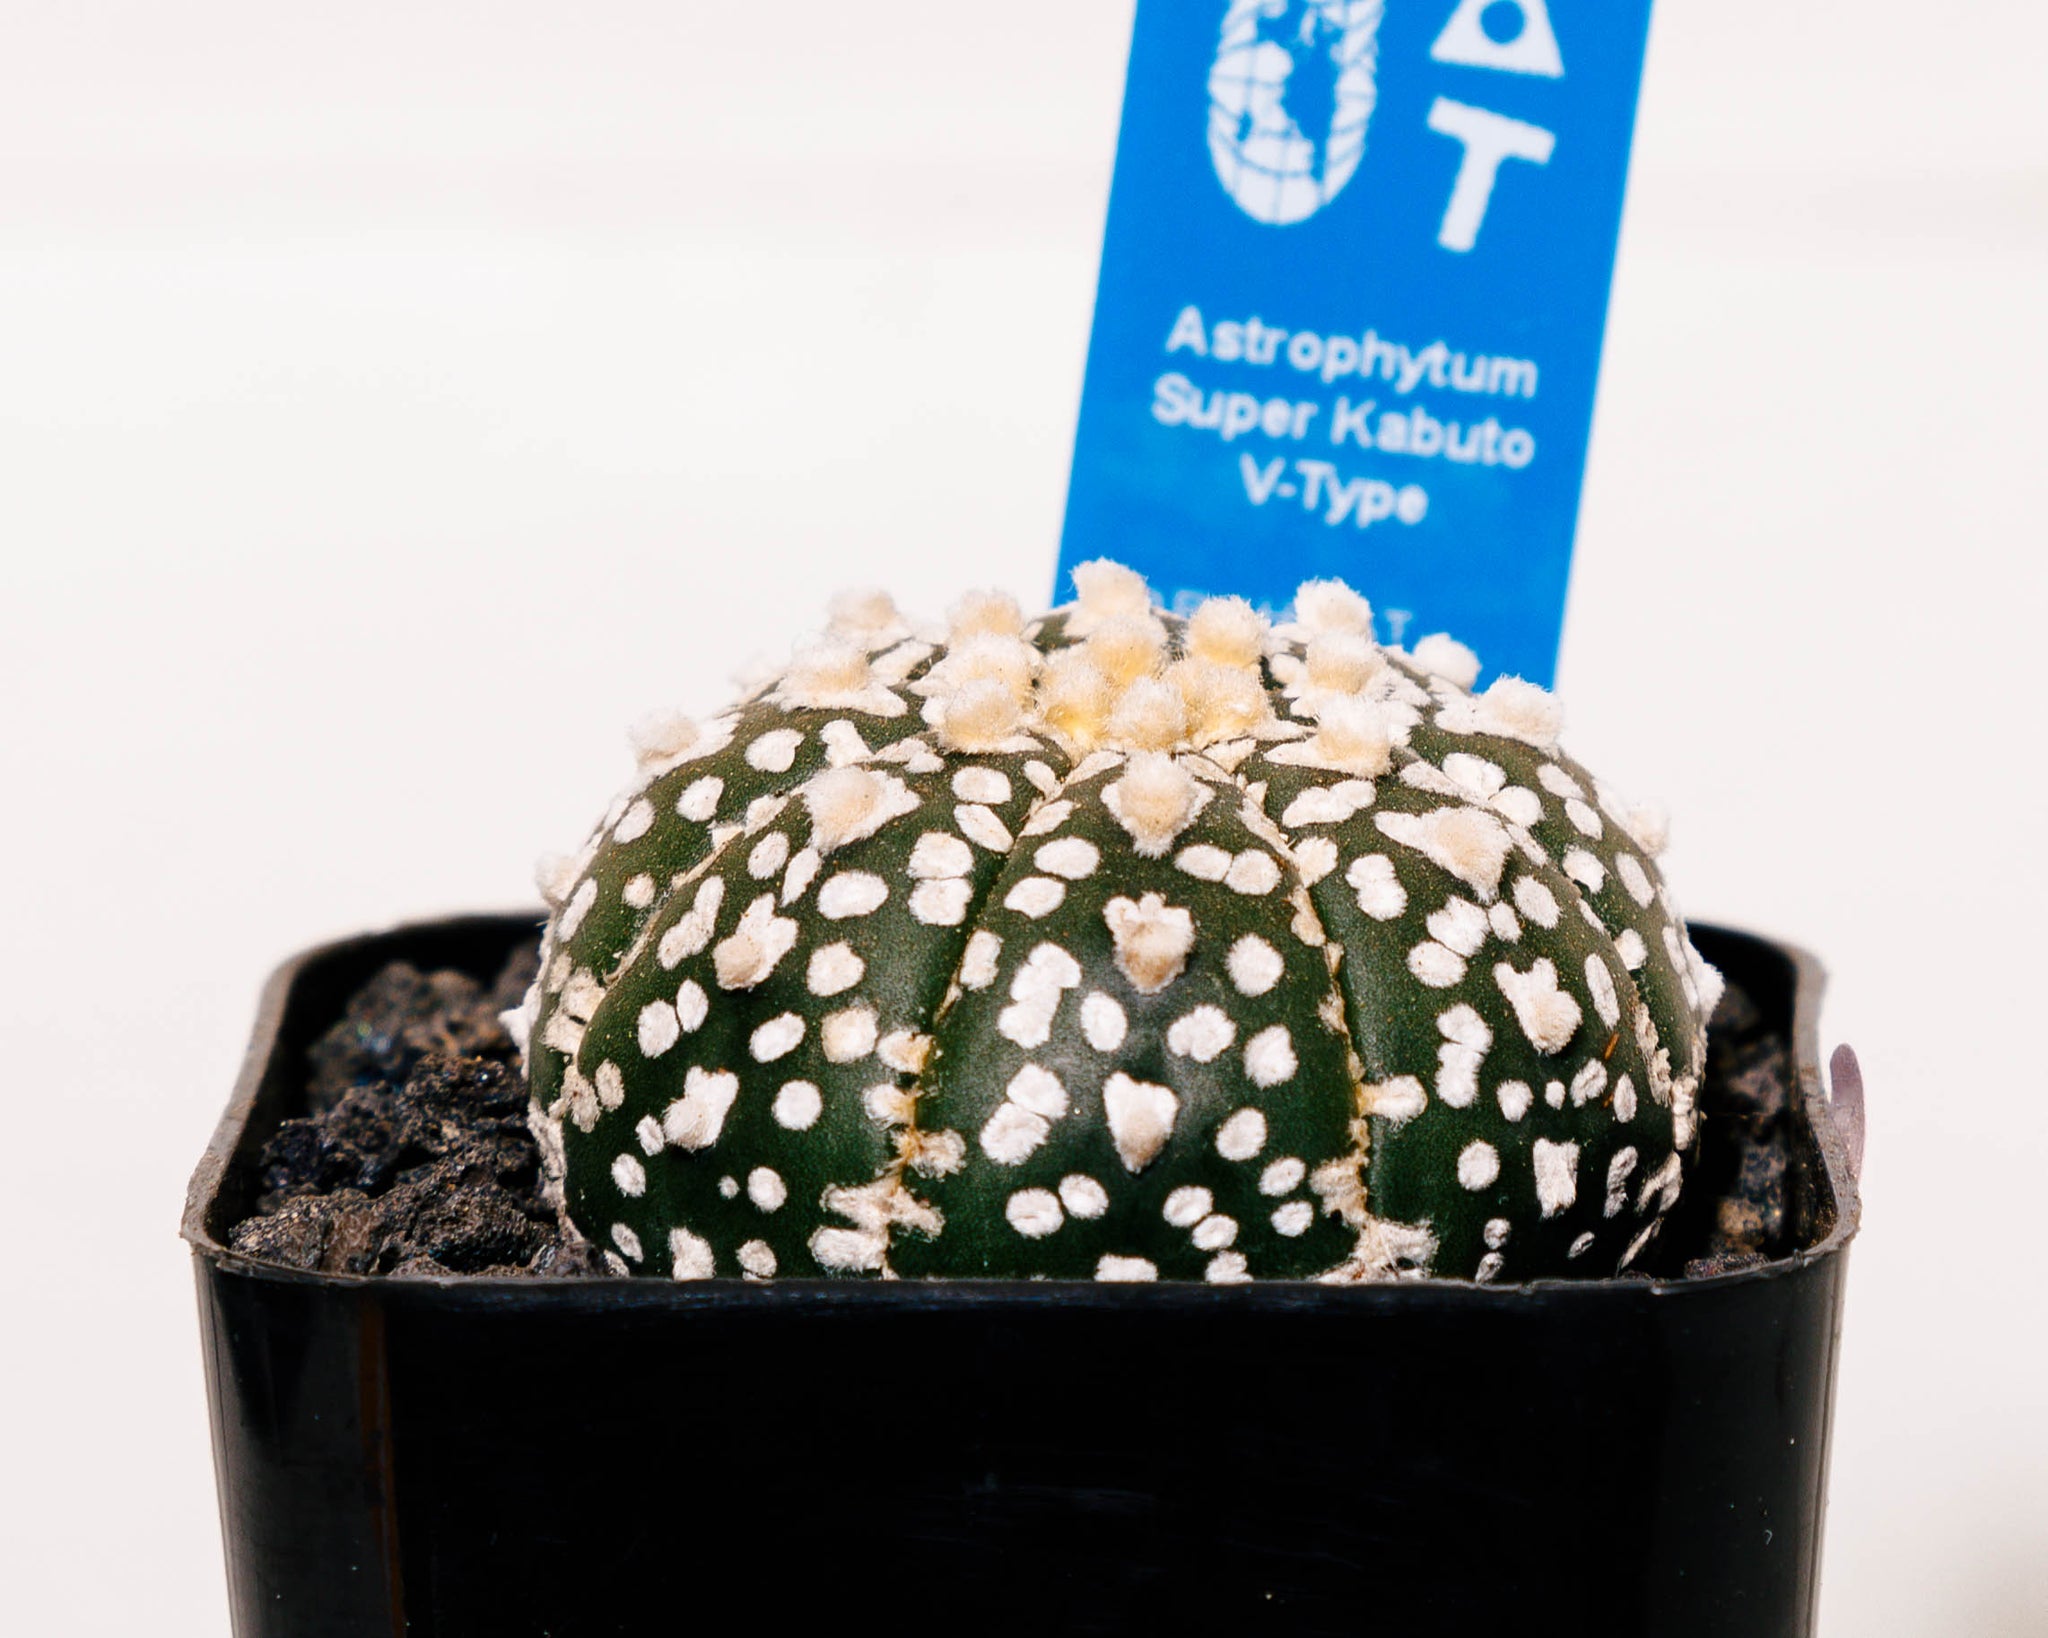 Astrophytum asterias cv. Super Kabuto V type